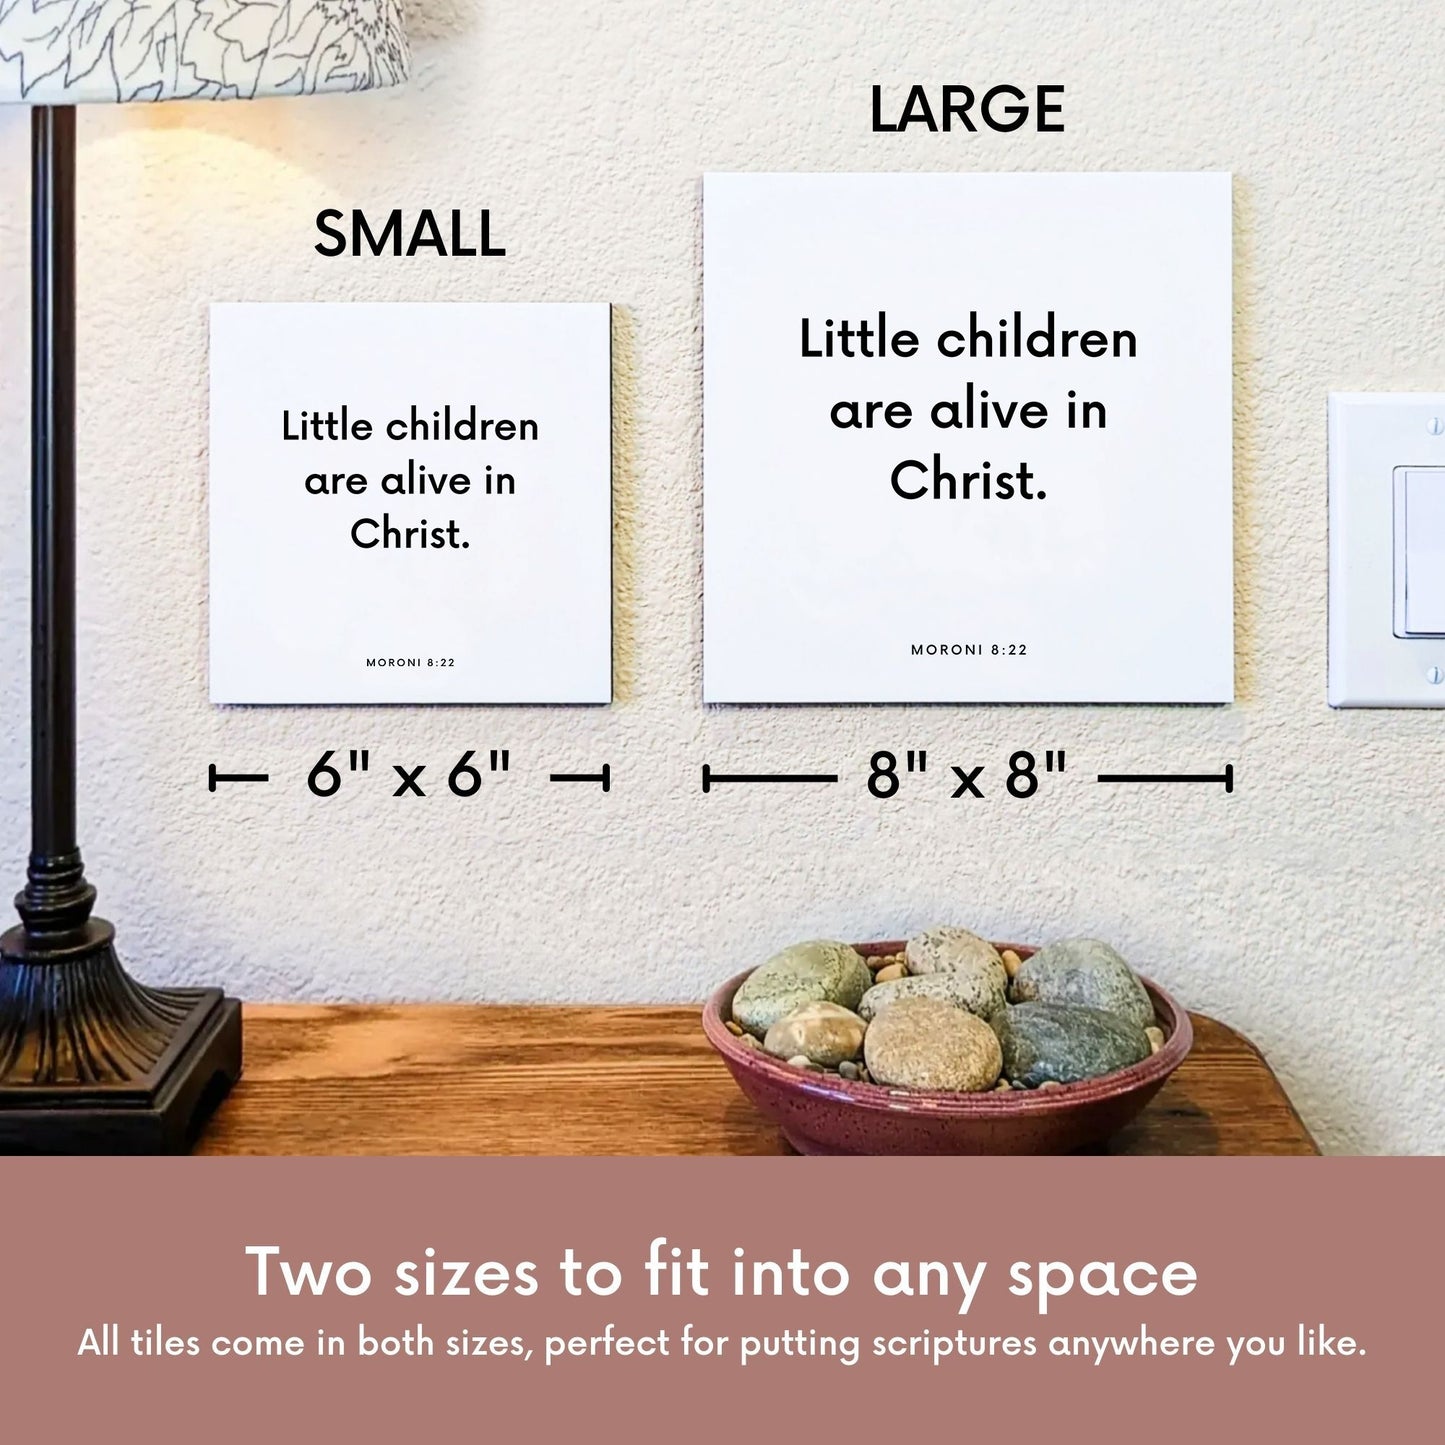 Scripture tile size comparison for Moroni 8:22 - "Little children are alive in Christ"